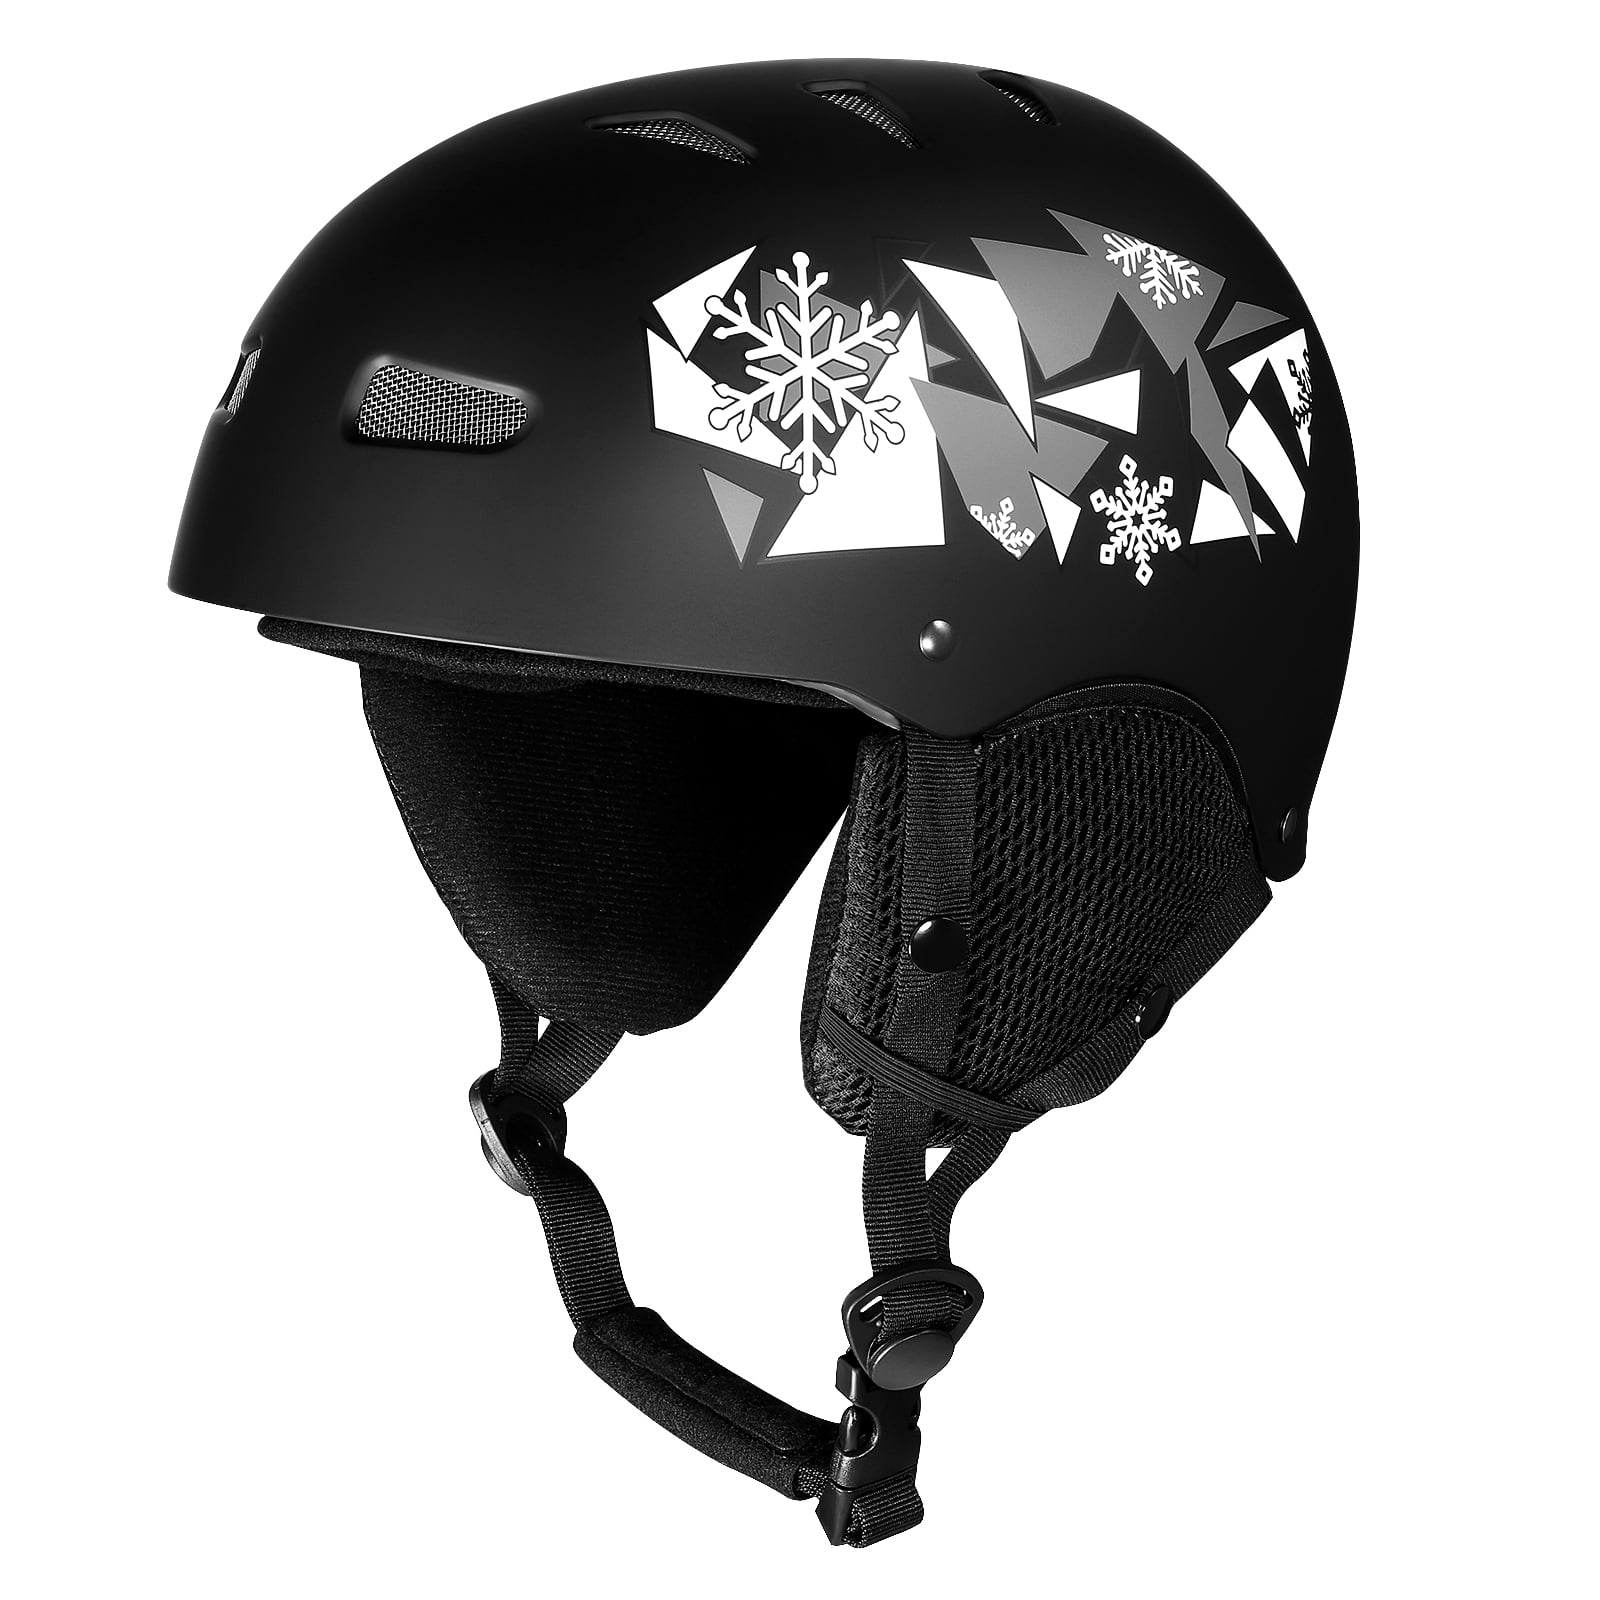 Unisex Adult Snow Sport Ski Helmet Protective Skateboard Skiing Snowboard Helmet 